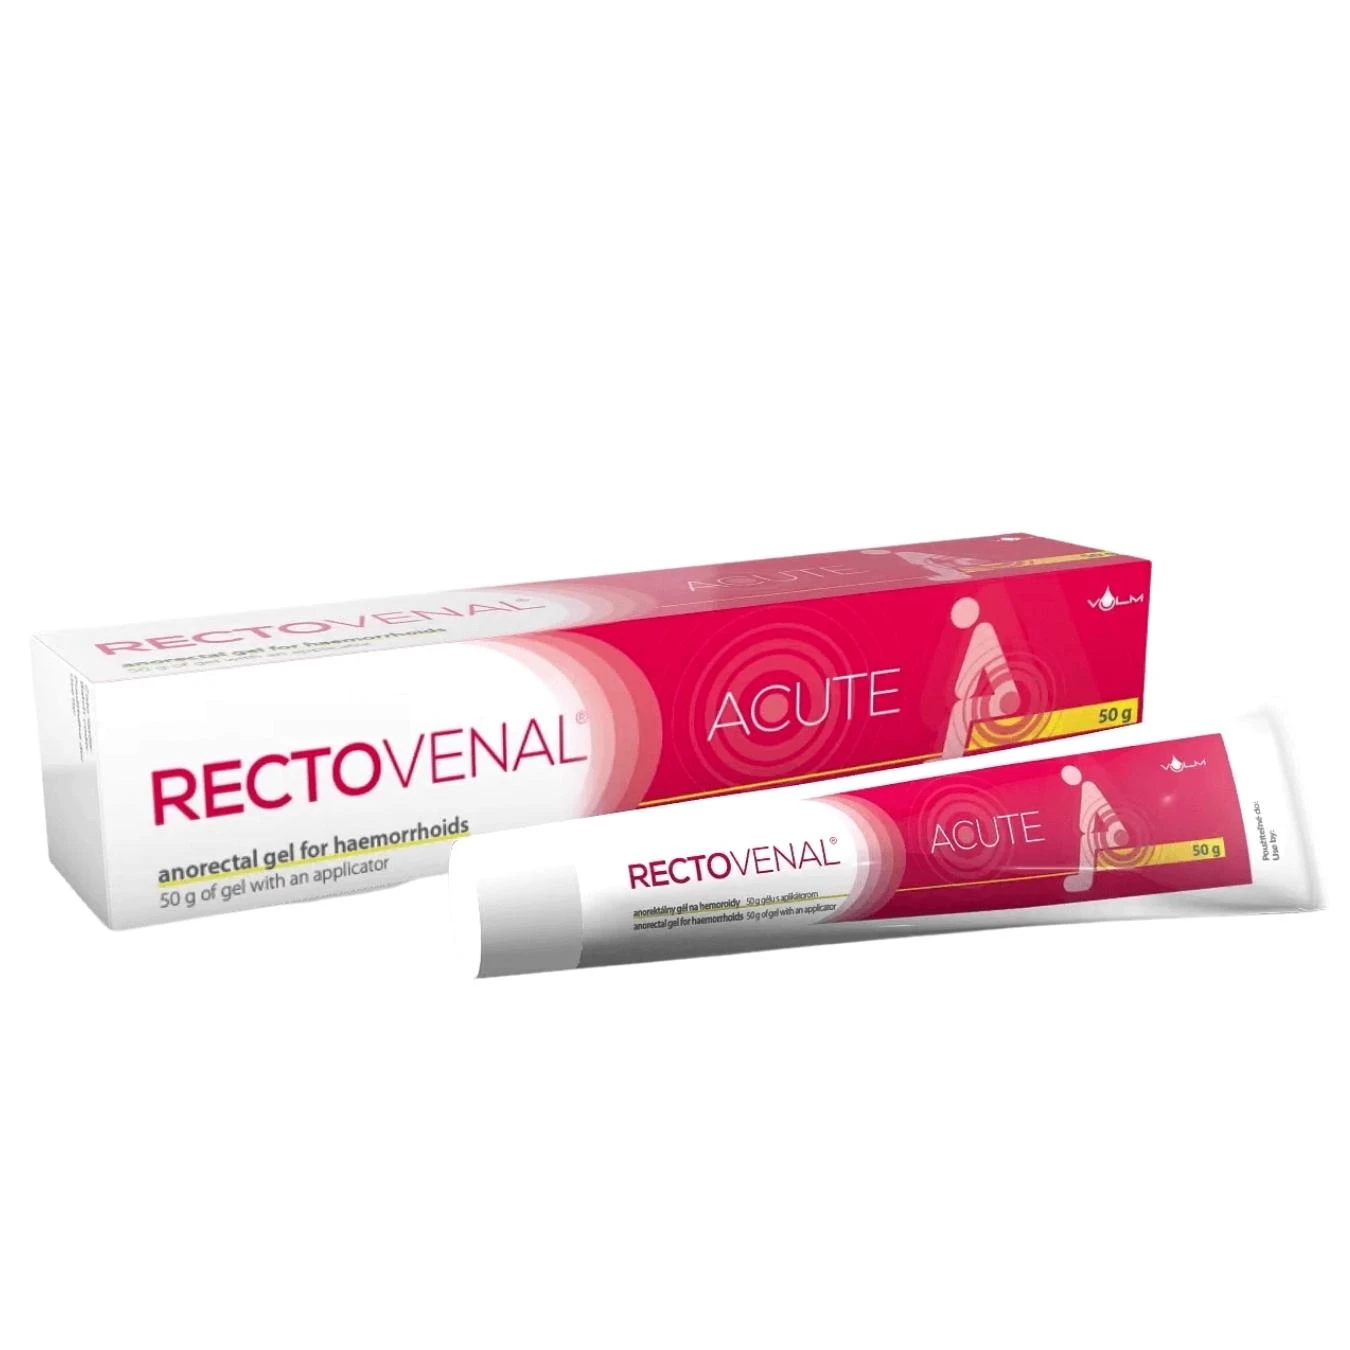 Rectovenal® Acute Gel 50 g Rektovenal